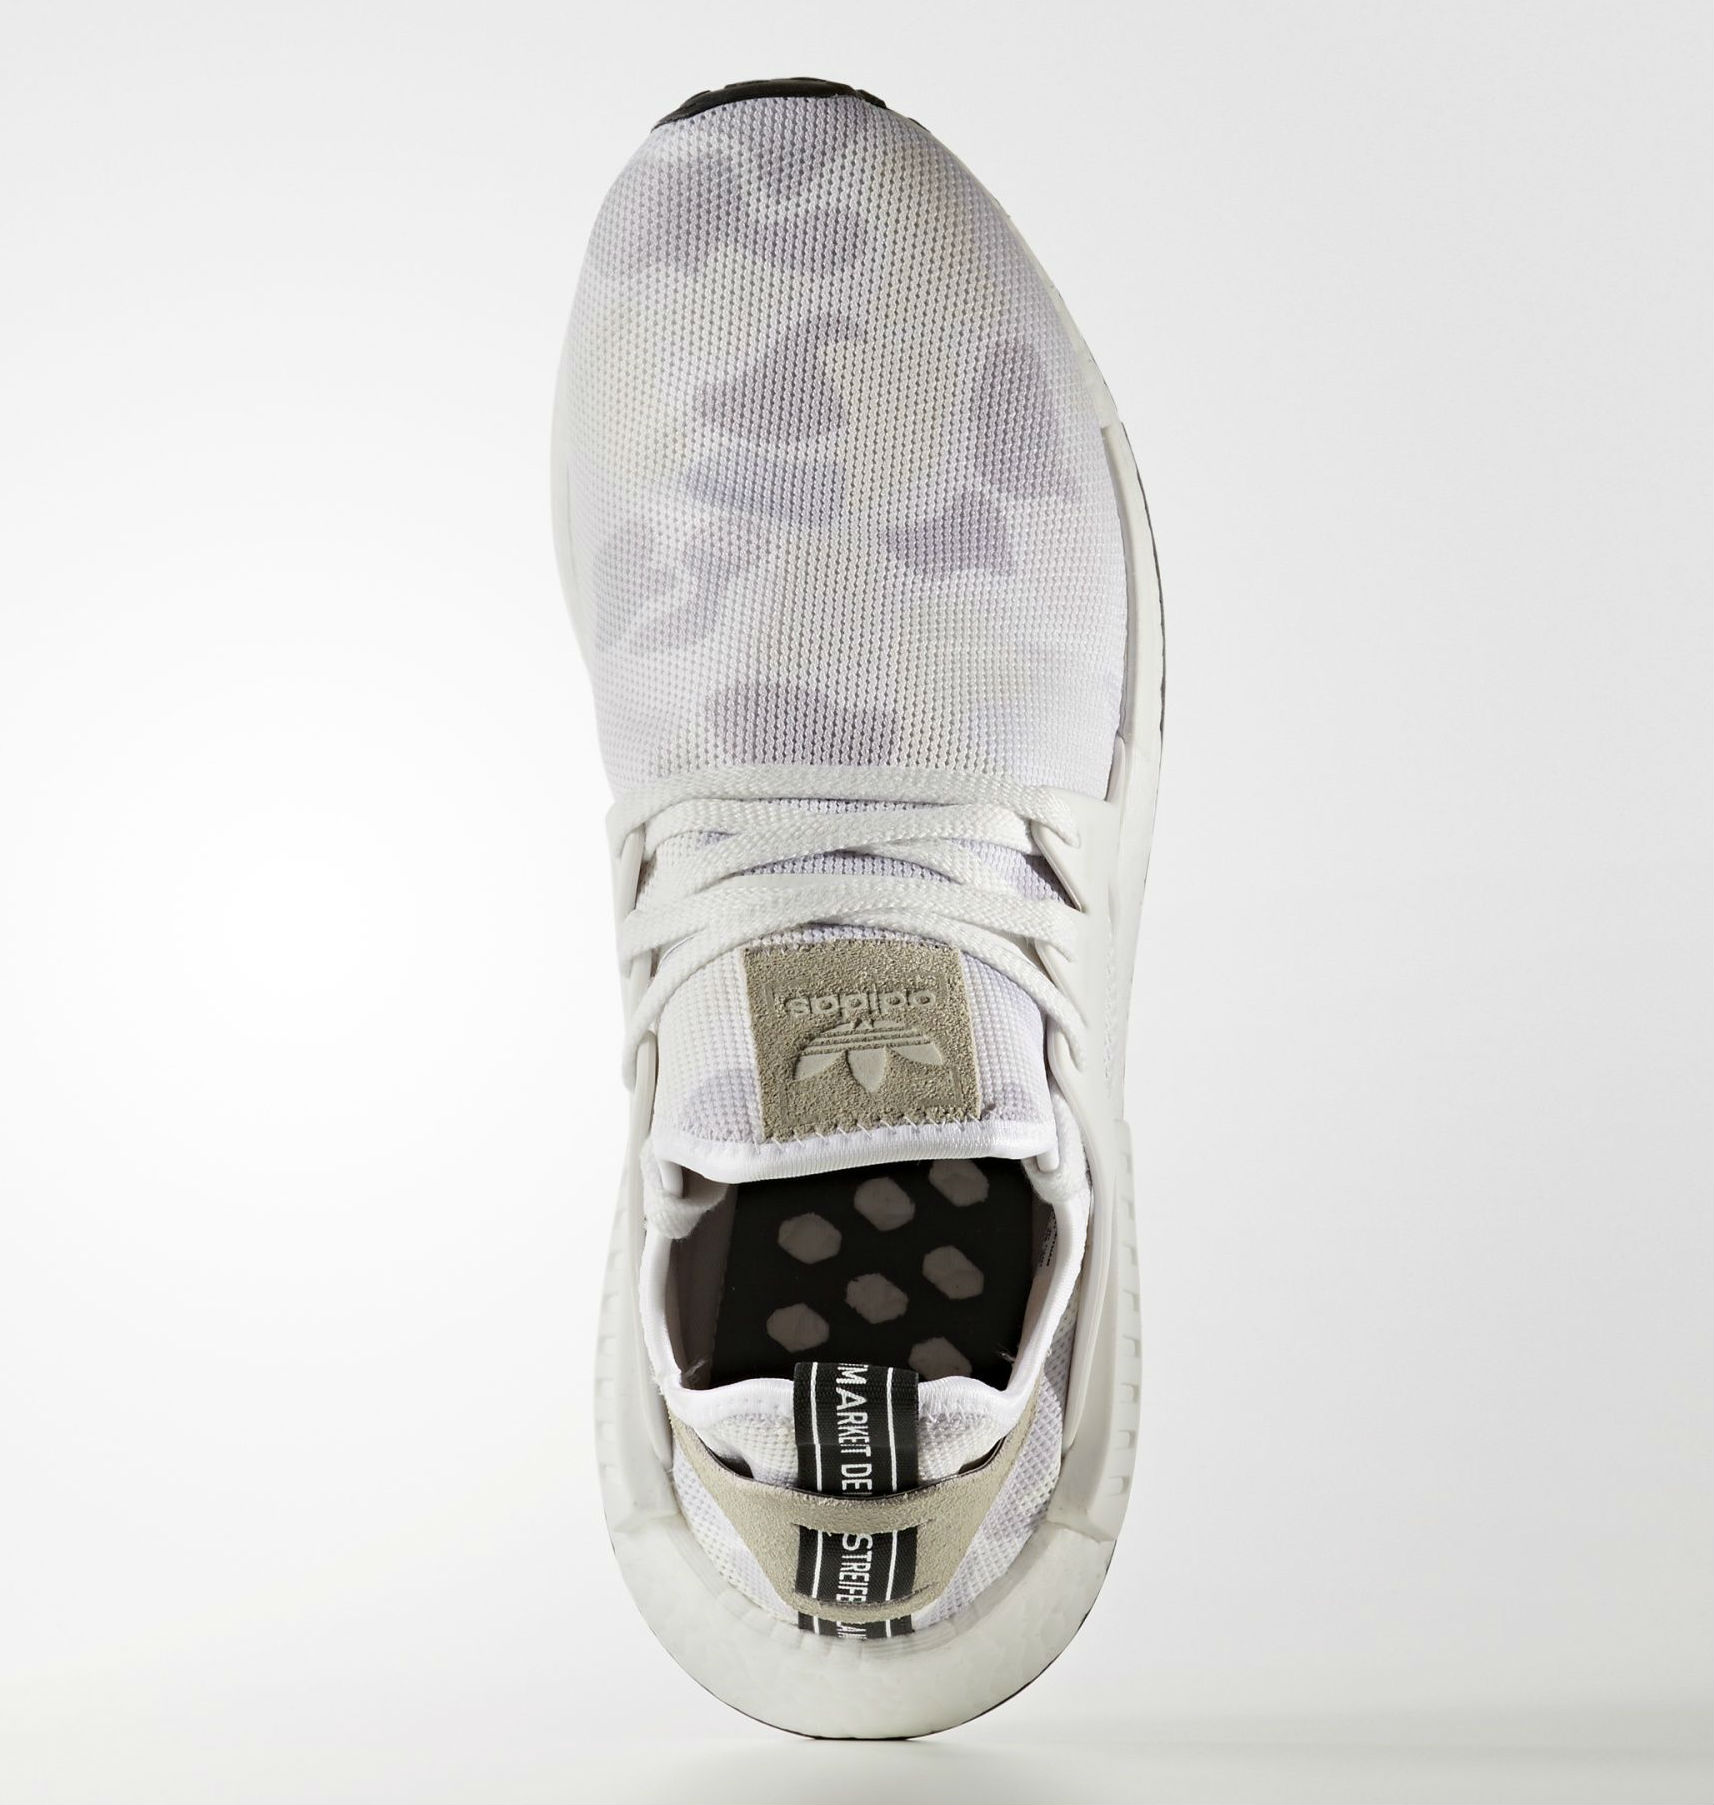 adidas nmd white camo details